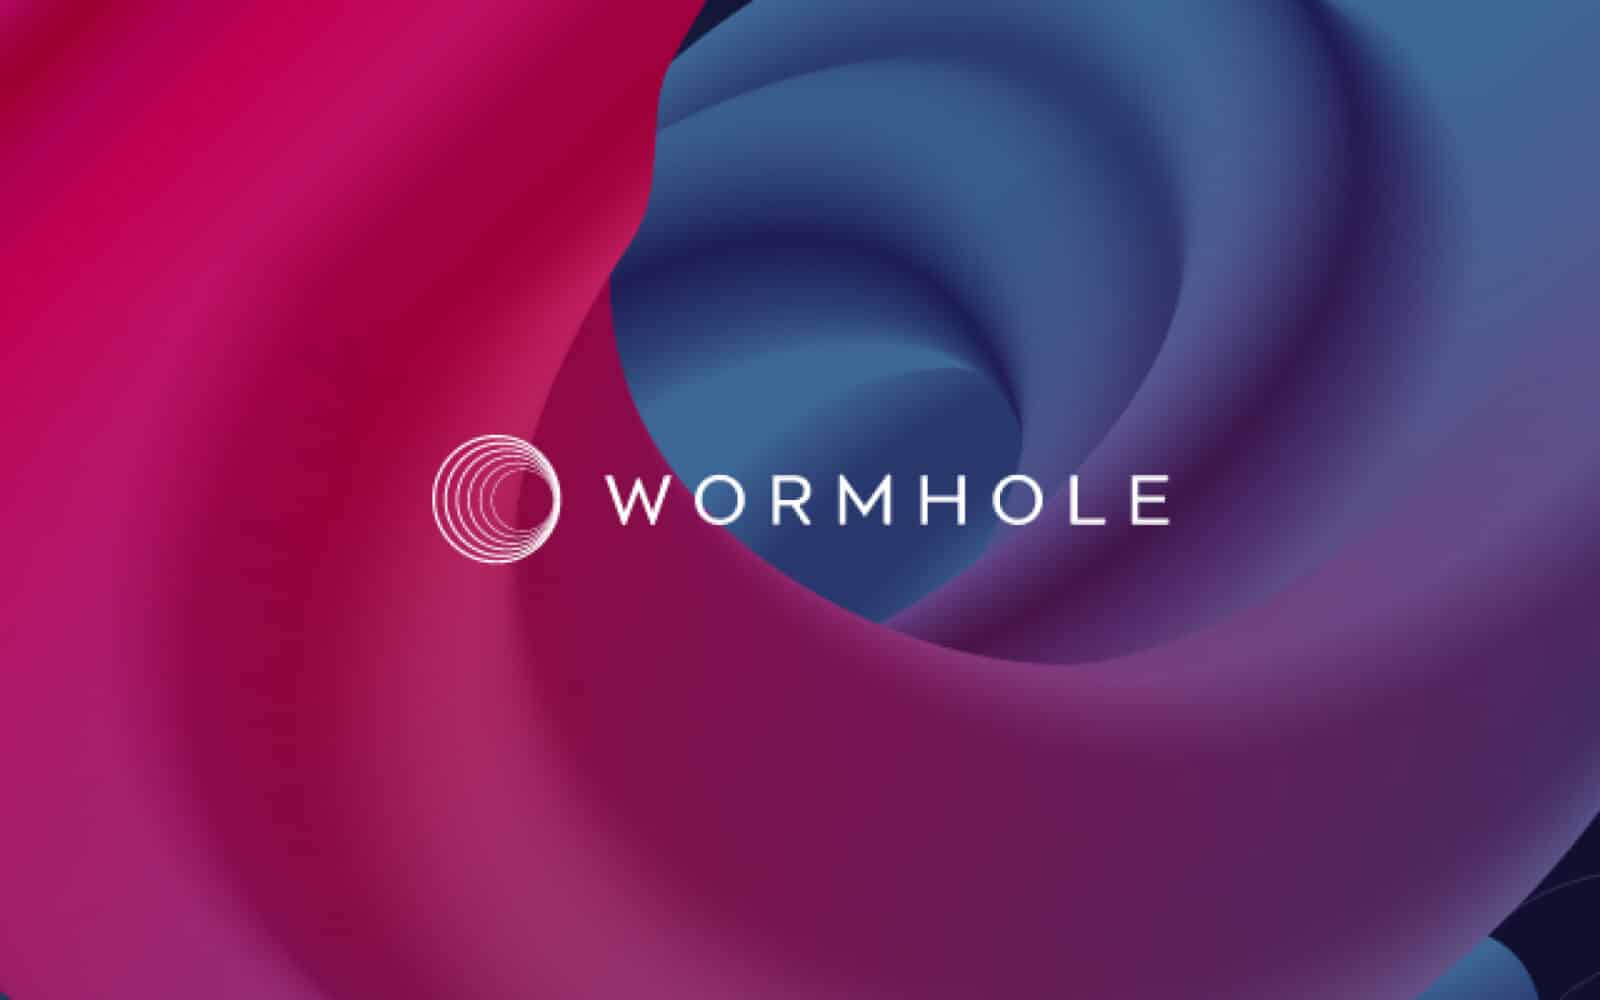 Wormhole hack